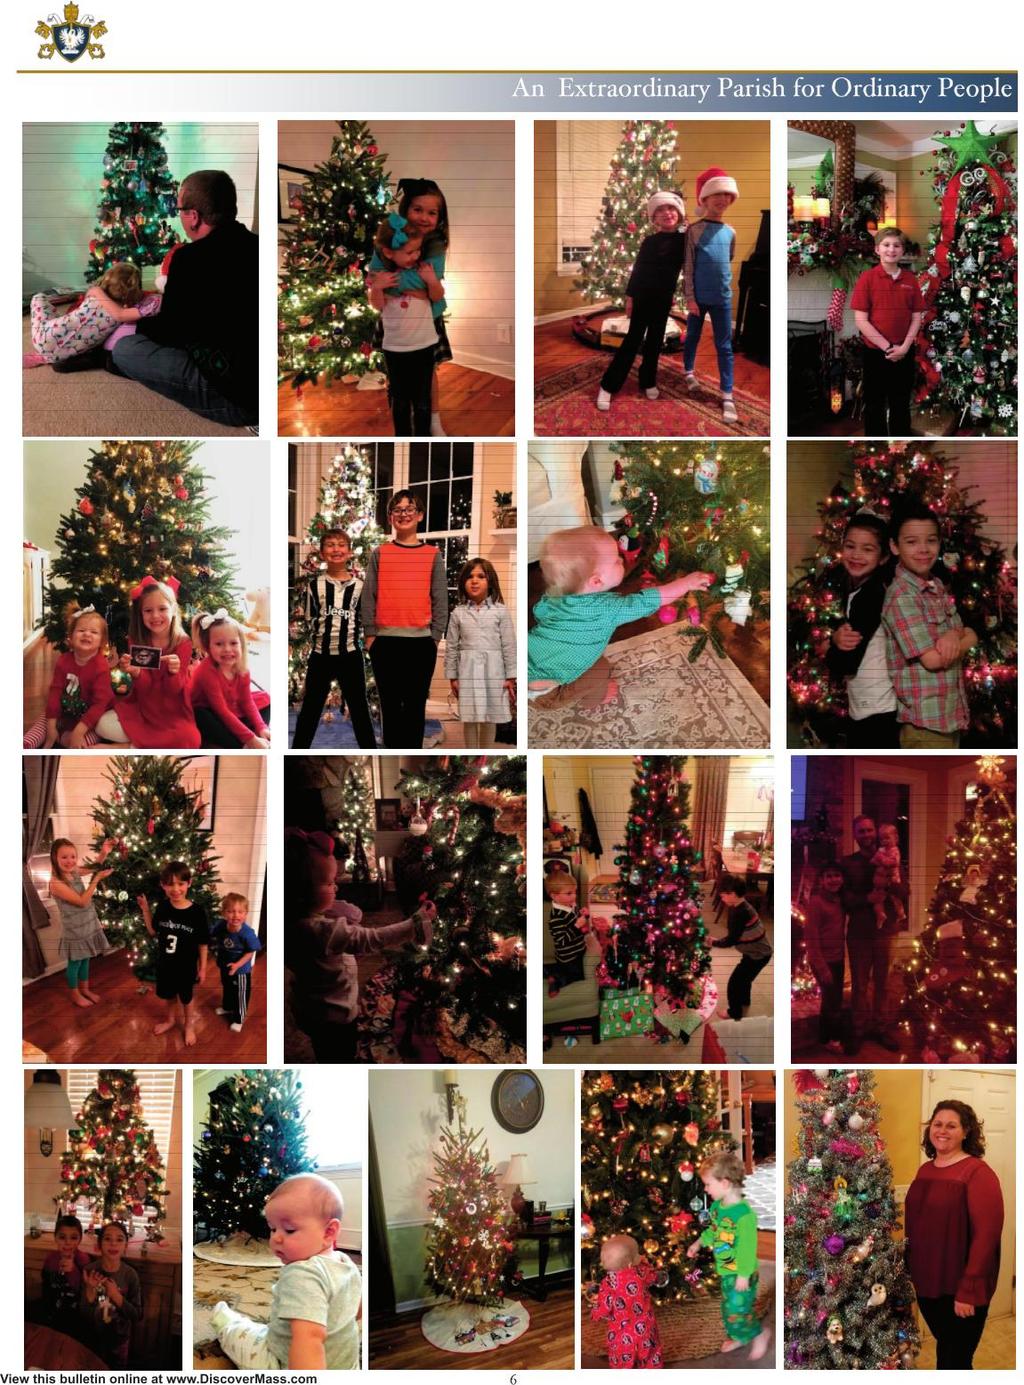 O Christmas tree,